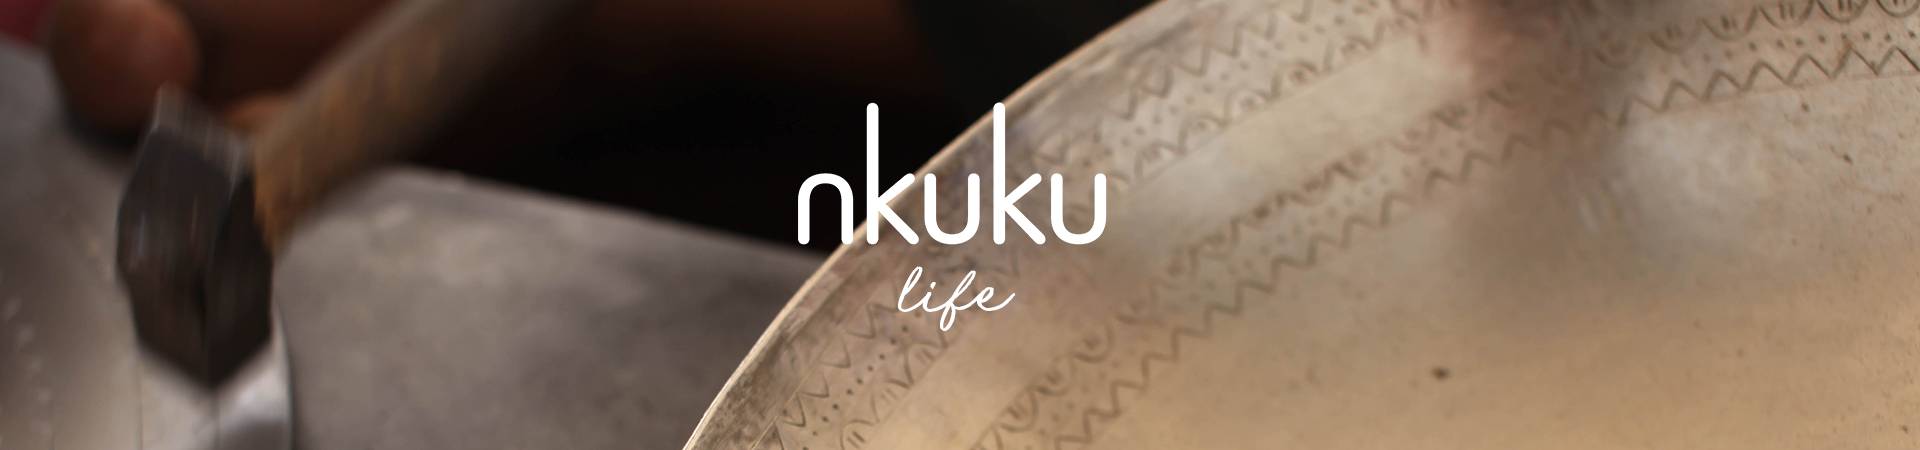 Nkuku-Life_Landing-Page-Header.jpg